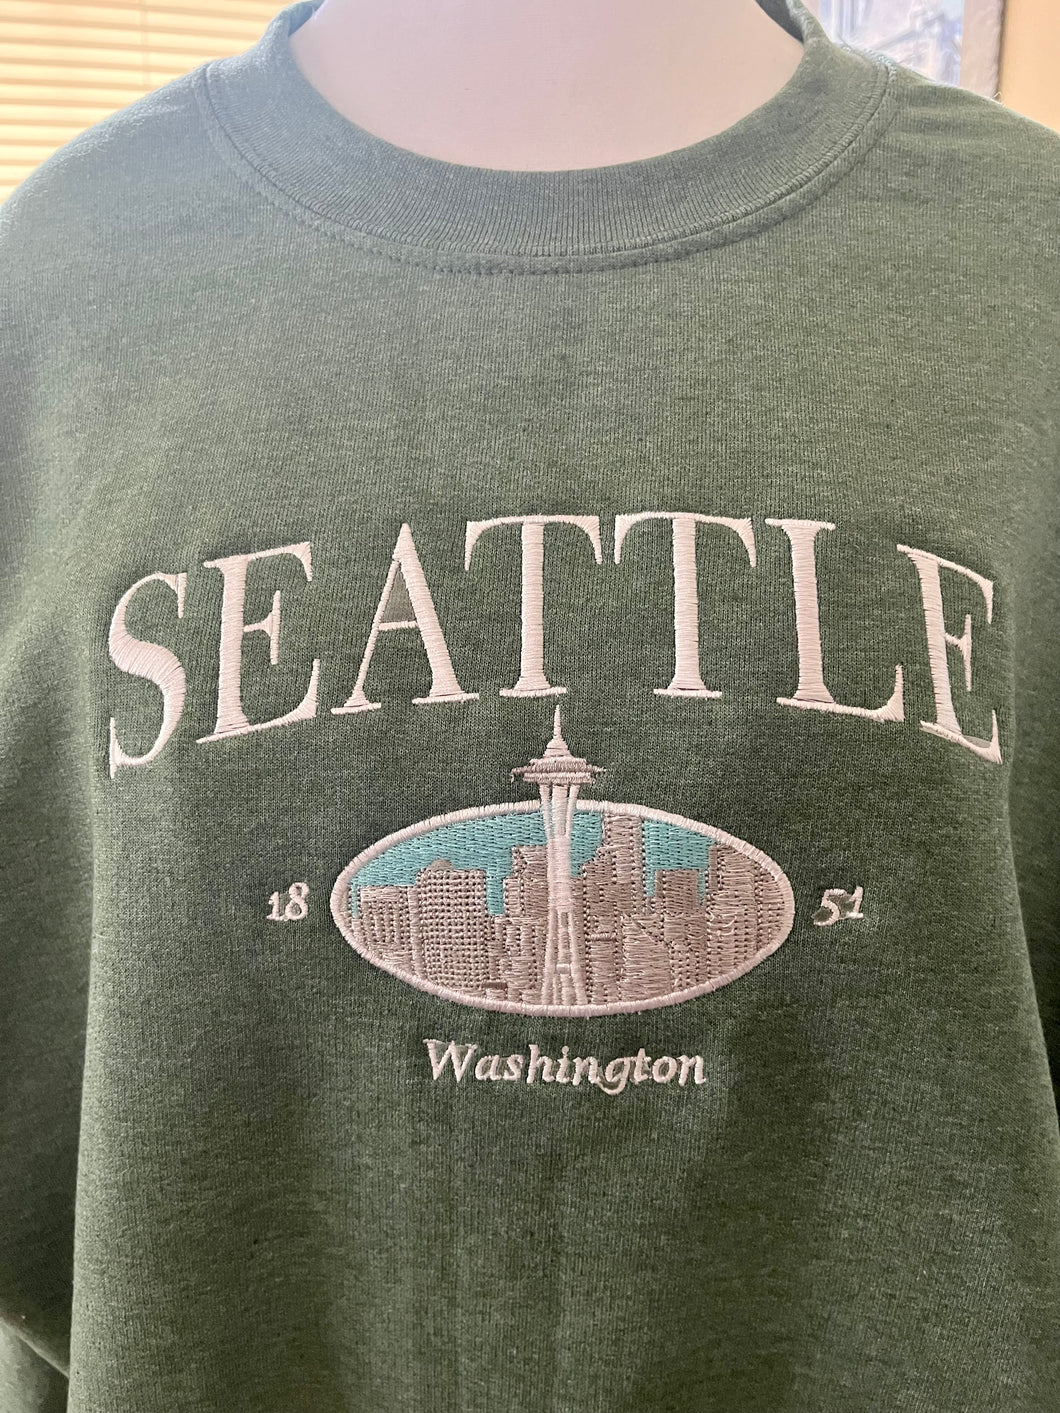 Seattle, Washington Embroidered Crewneck long sleeve